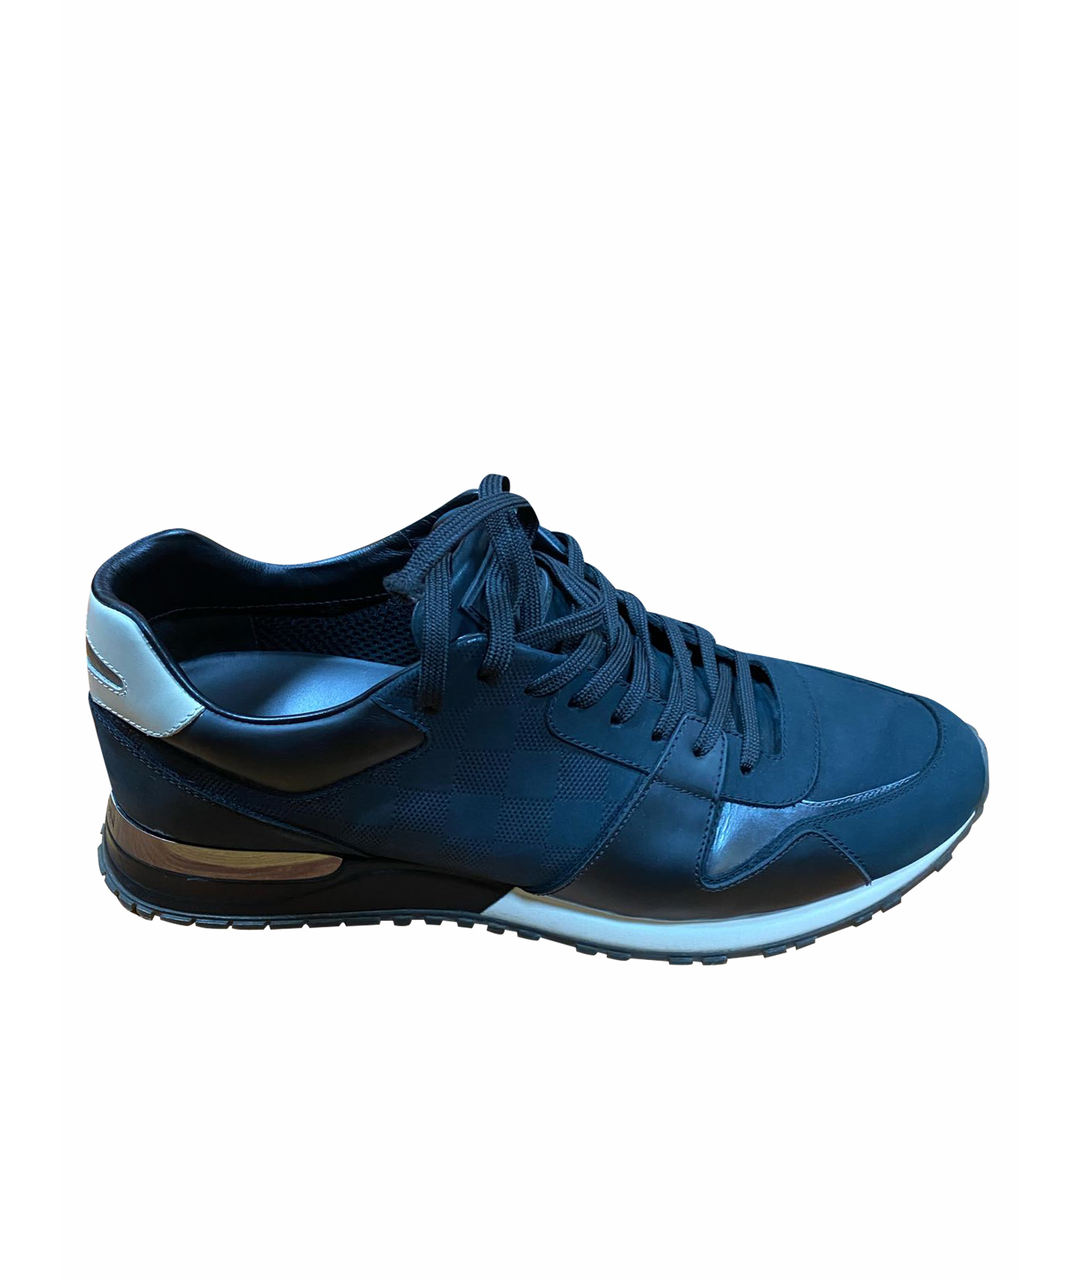 LOUIS VUITTON PRE-OWNED Темно-синие кожаные низкие кроссовки / кеды, фото 1